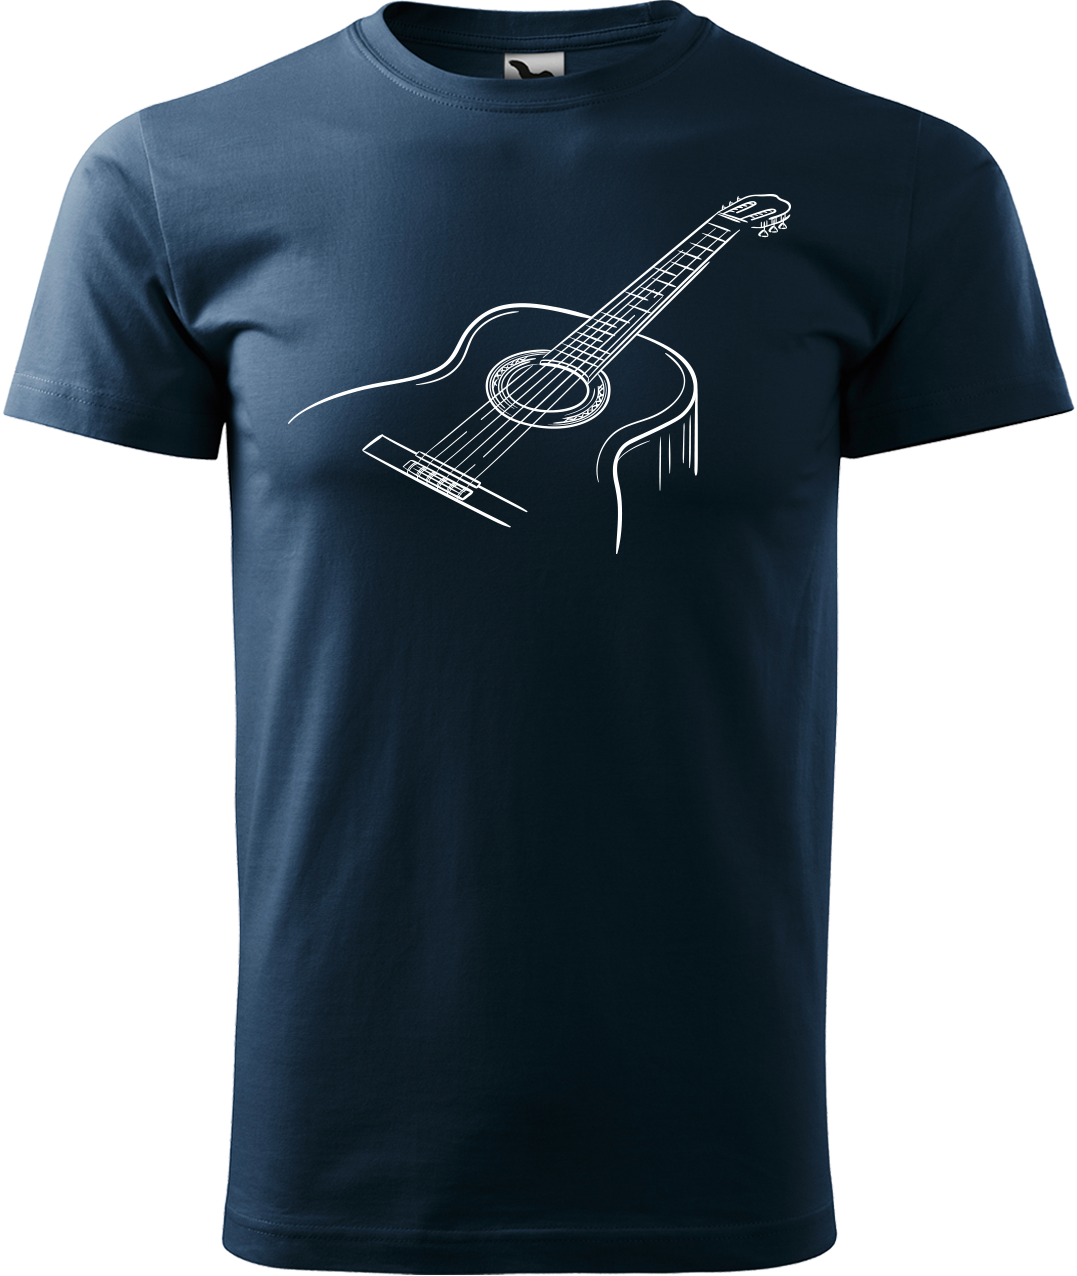 Pánské tričko s kytarou - Klasická kytara Velikost: 4XL, Barva: Námořní modrá (02)